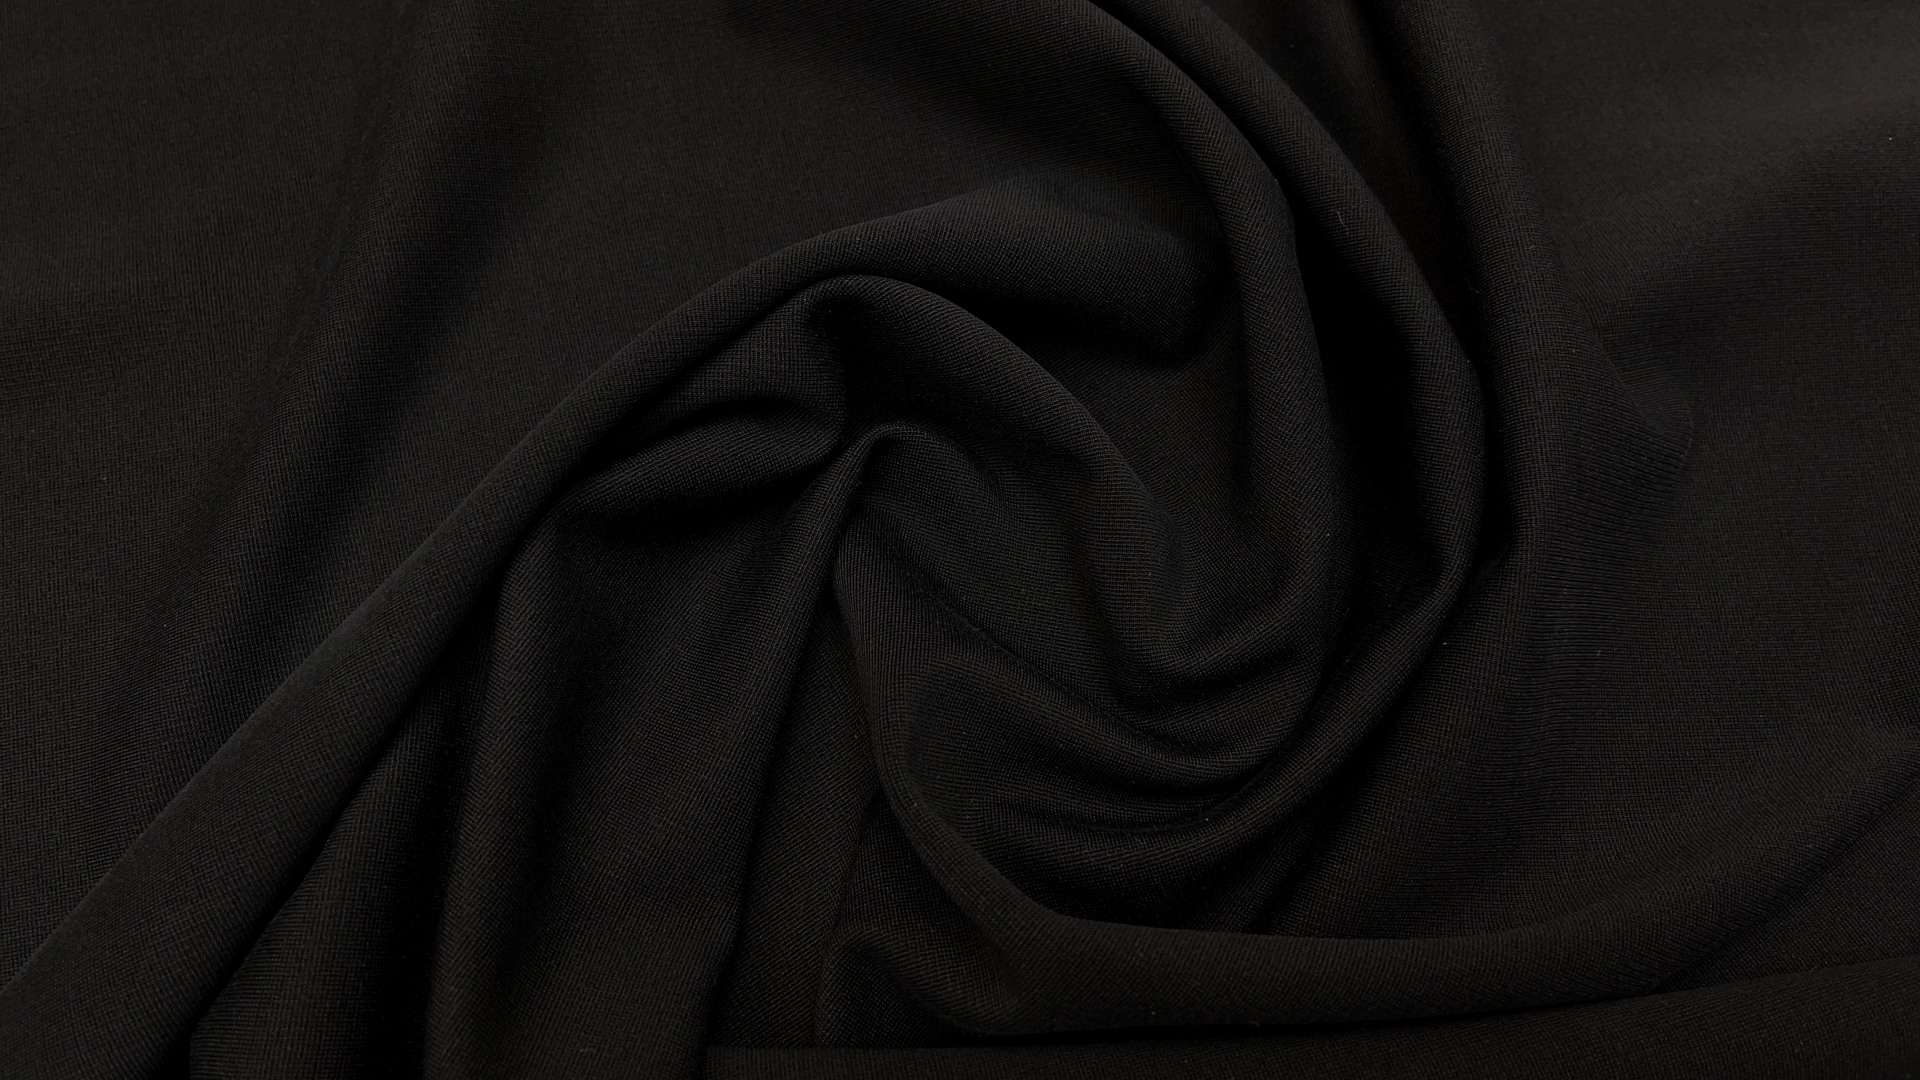 Джерси черного цвета из итальянского фабричного стока. Очень приятное тактильно, гладкое, поверхность без пушистости. Эластичное, тянется в четыре стороны. Идеально для базового платья любого силуэта. Также можно шить спортивные брючки.